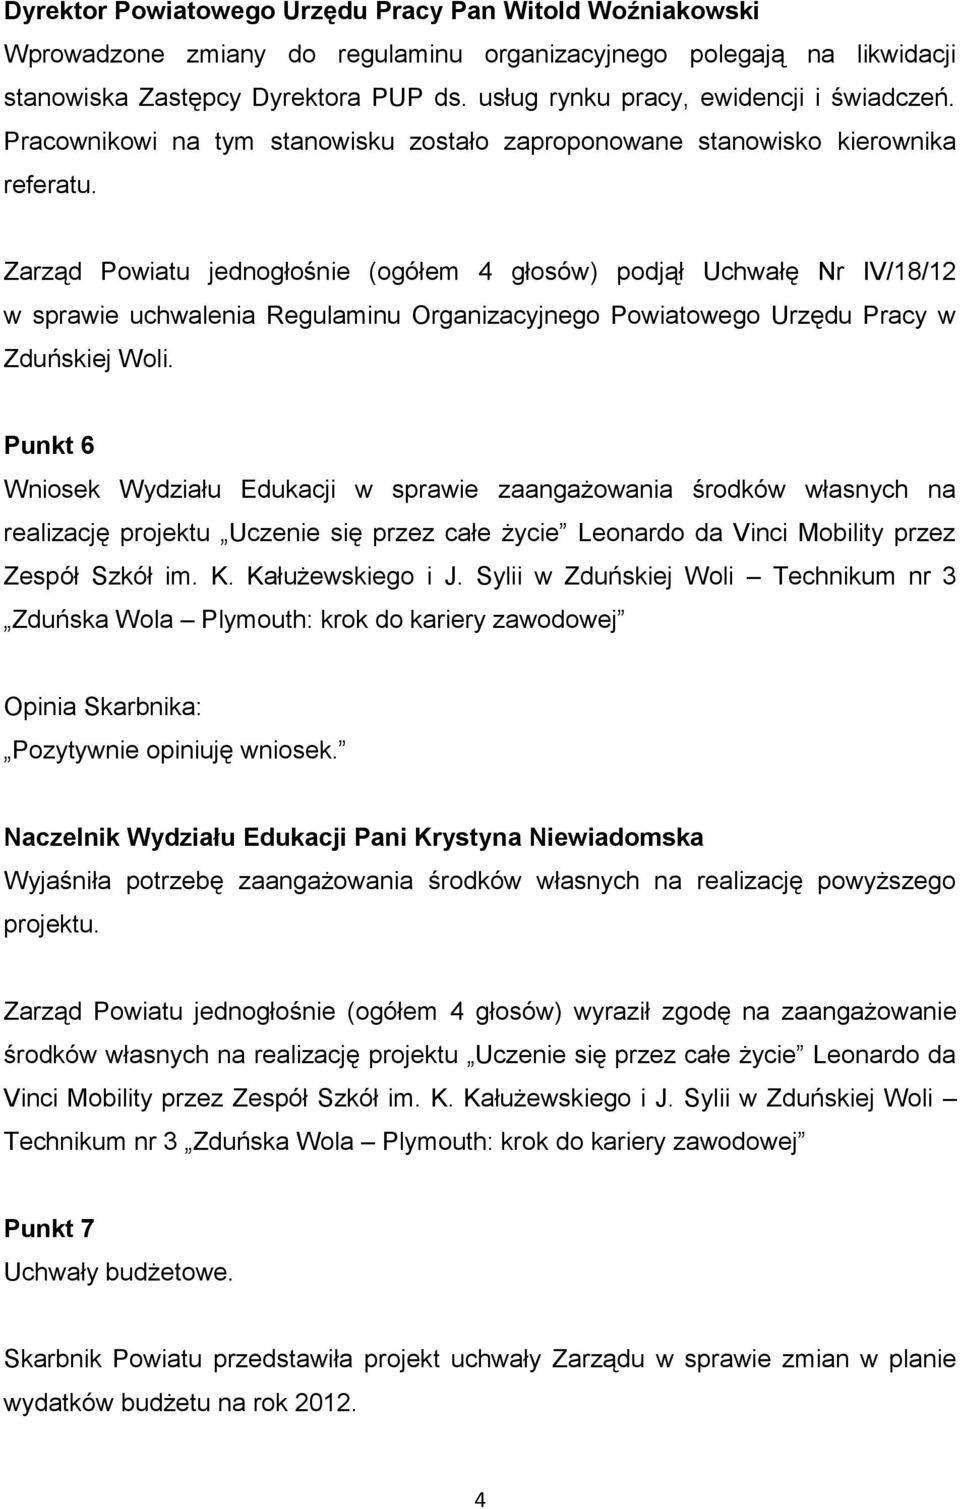 Zarząd Powiatu jednogłośnie (ogółem 4 głosów) podjął Uchwałę Nr IV/18/12 w sprawie uchwalenia Regulaminu Organizacyjnego Powiatowego Urzędu Pracy w Zduńskiej Woli.